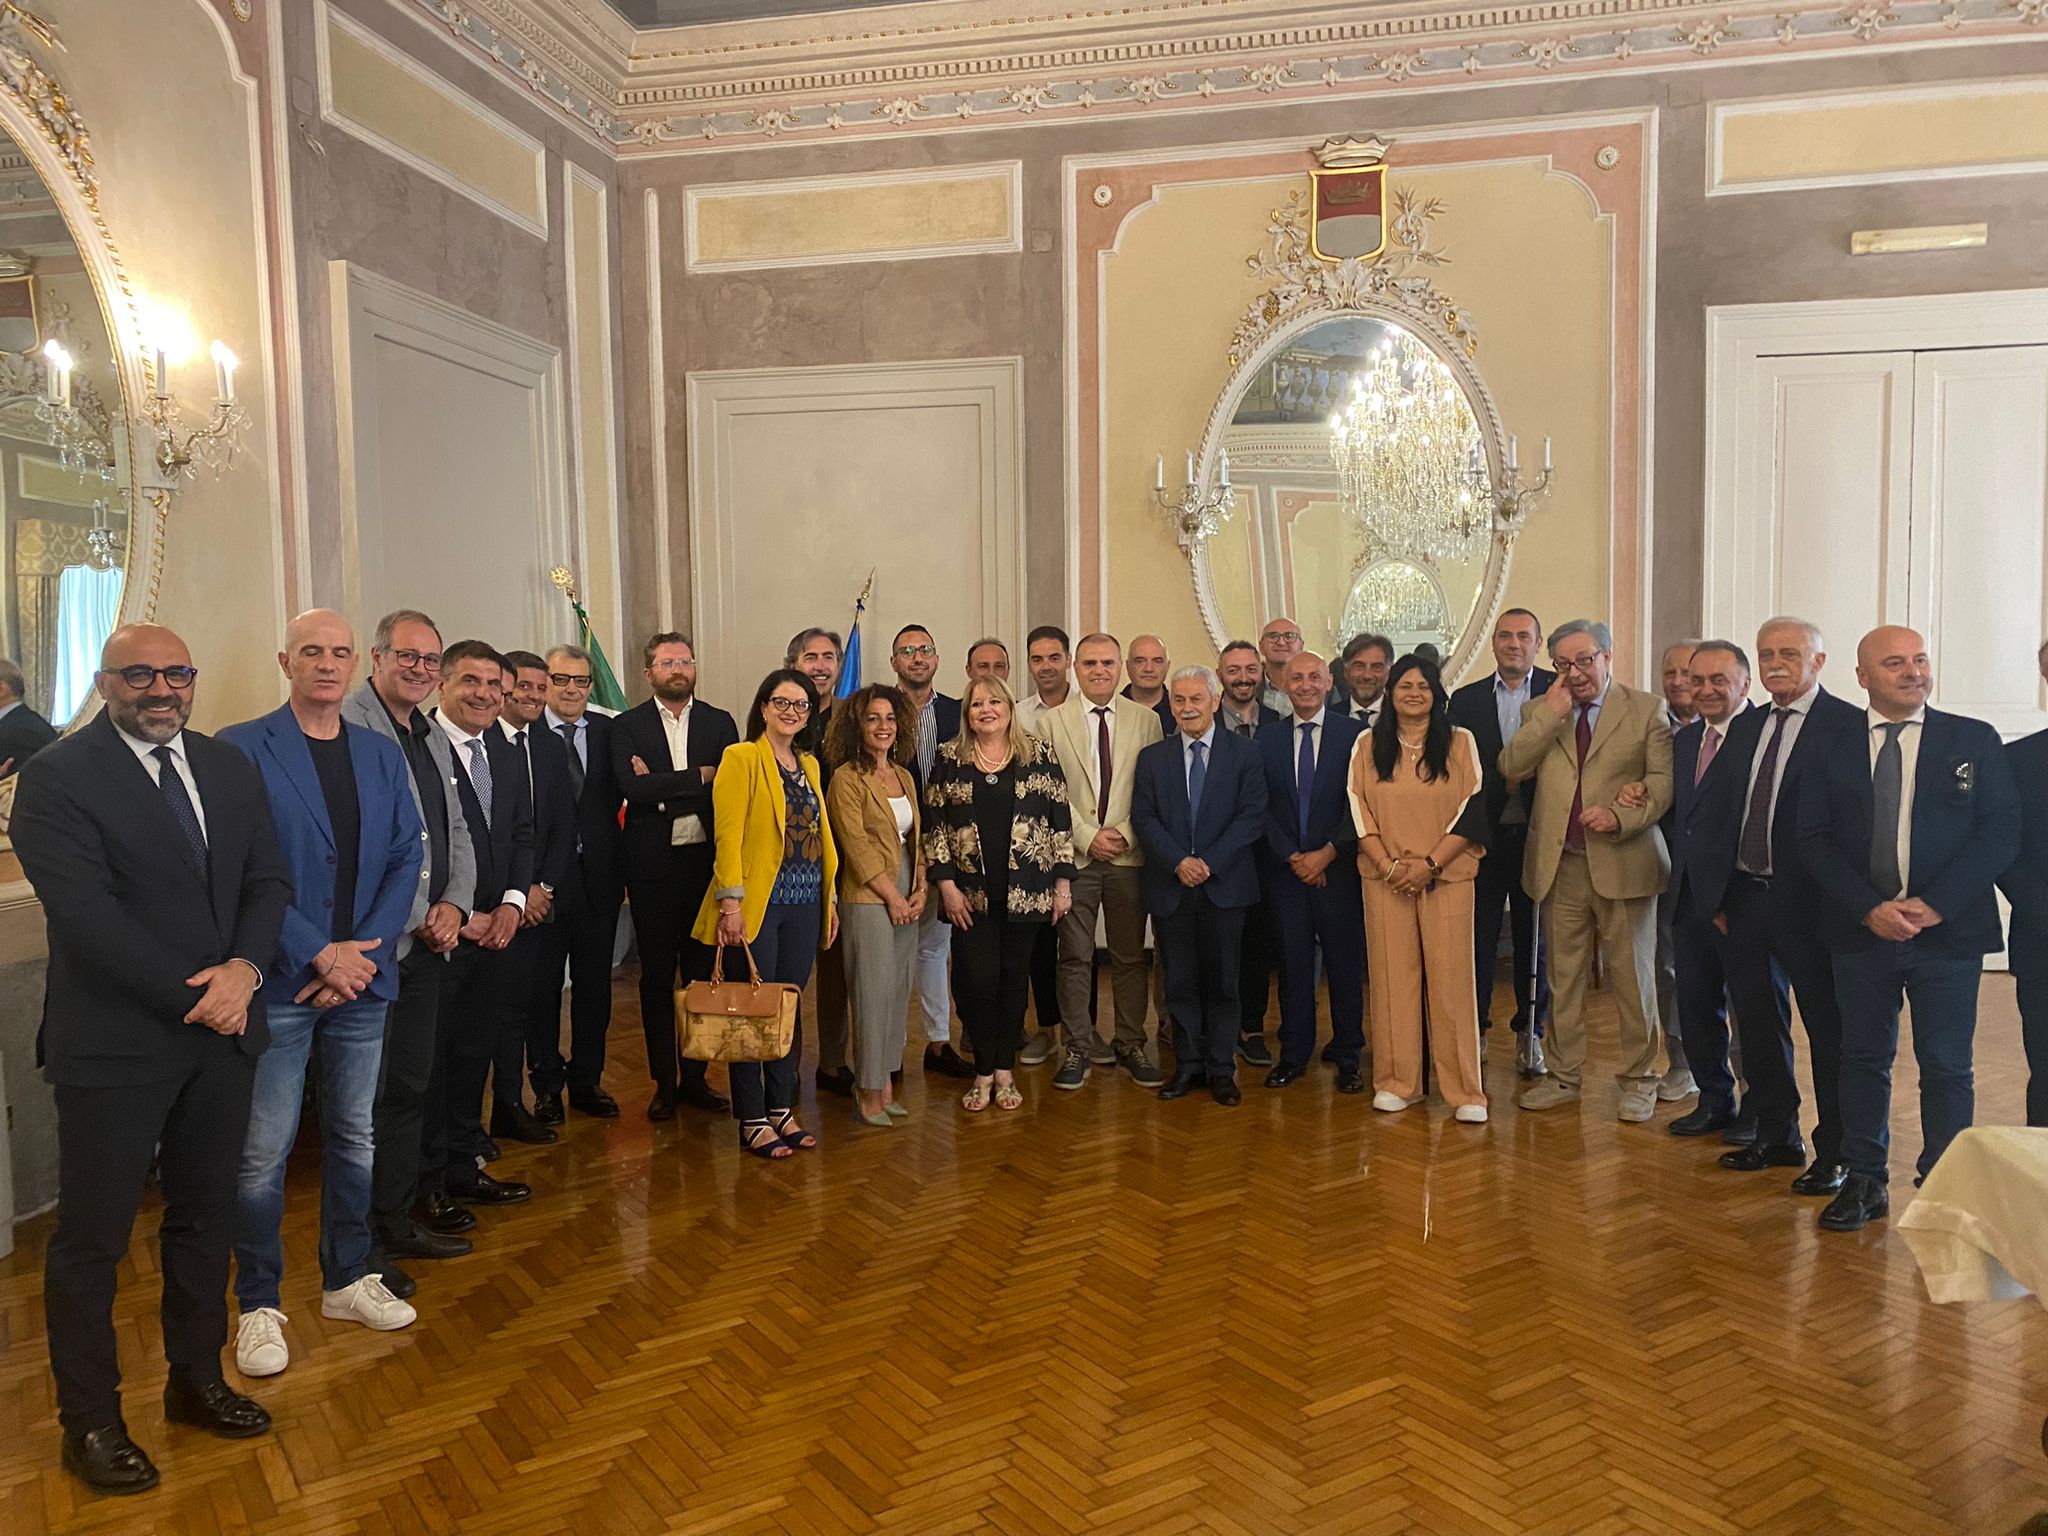 Avellino| Sicurezza pubblica e urbana integrata, il prefetto Riflesso incontra i neo eletti sindaci irpini